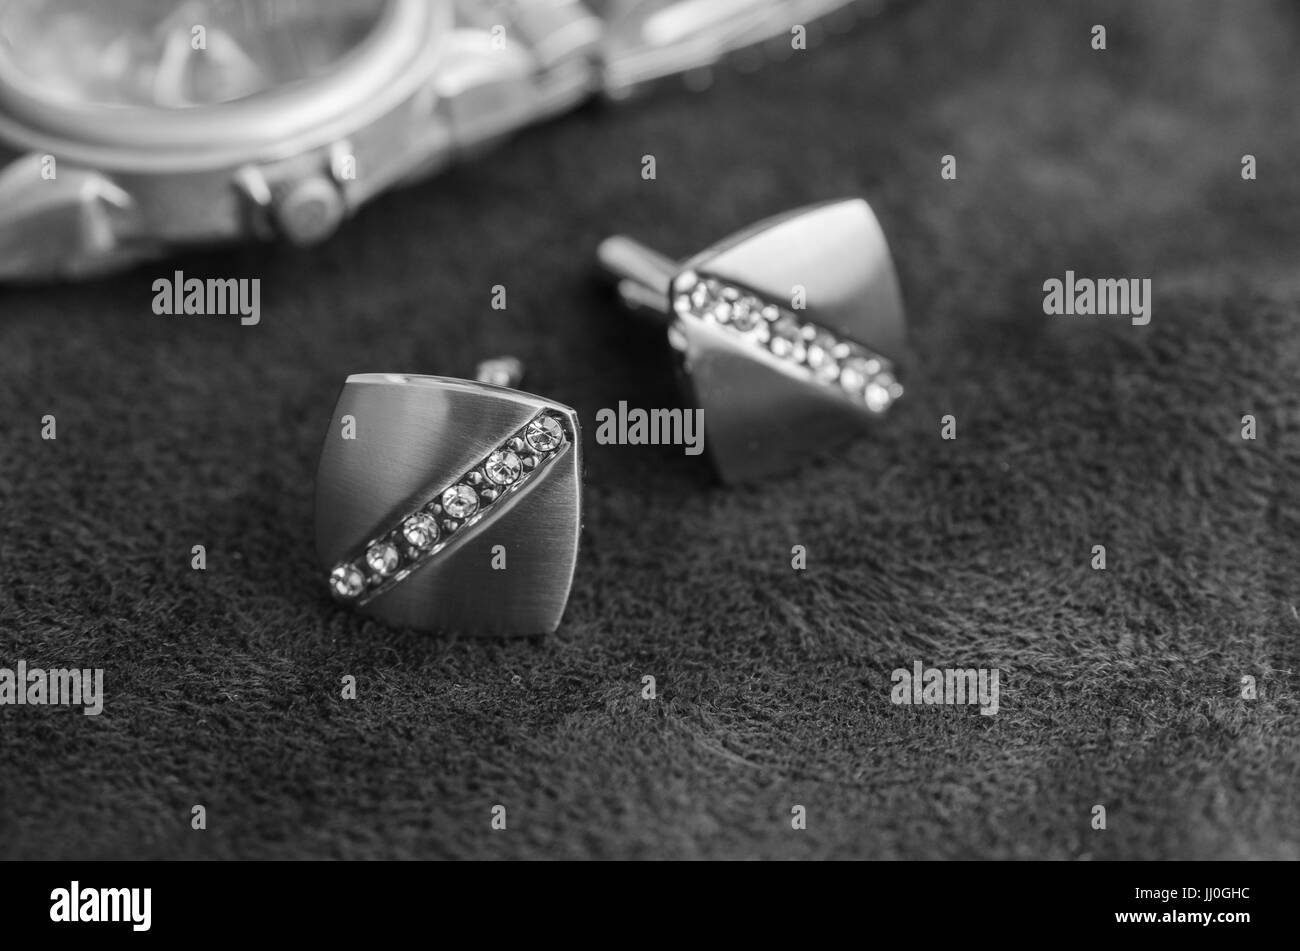 Silber Manschettenknöpfe mit Strass auf der dunklen Materie in der Nähe von Uhren, schwarz / weiß-Foto Stockfoto